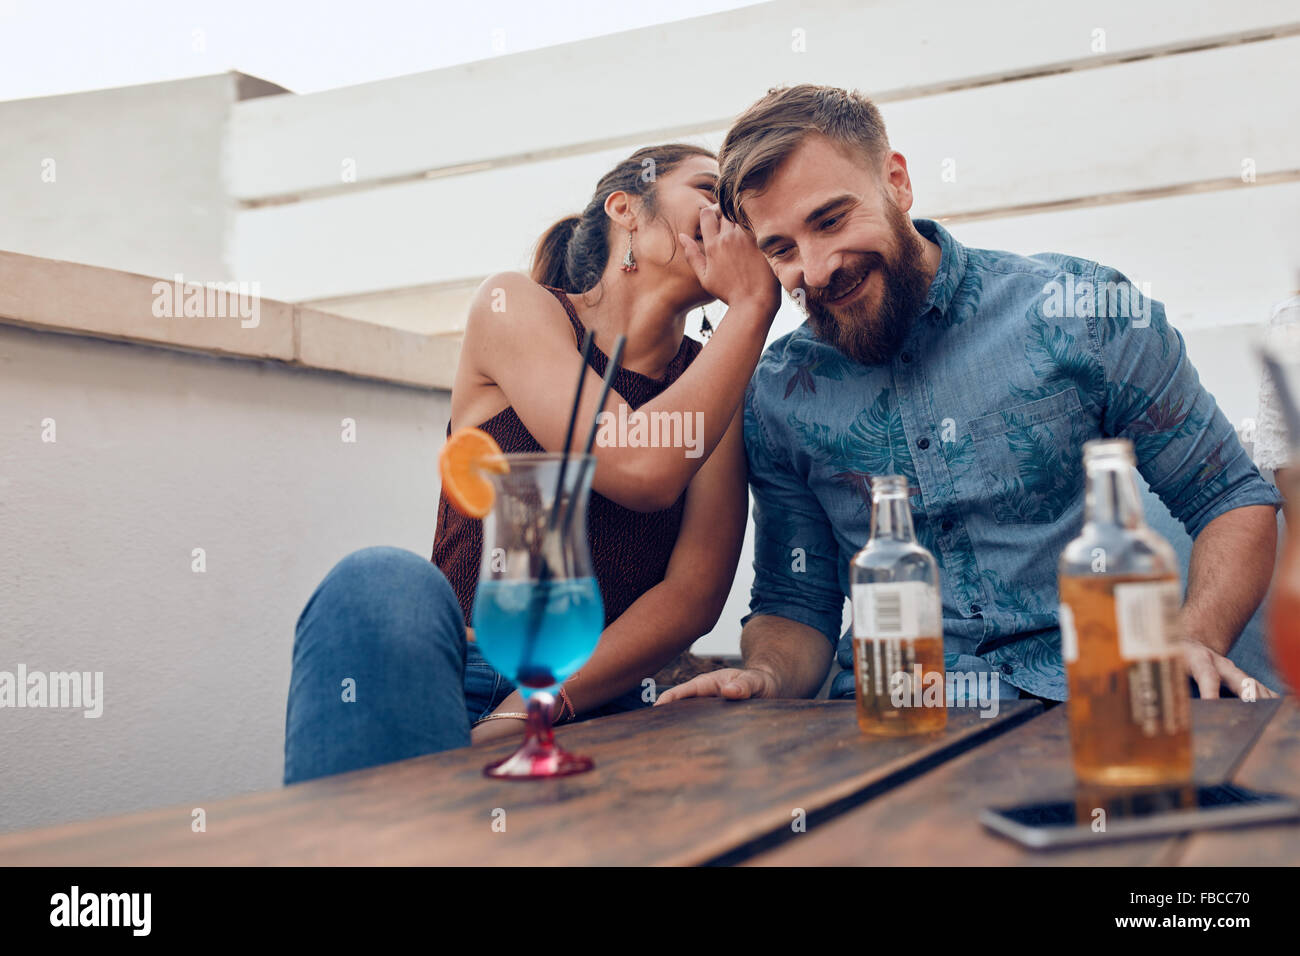 Zwei junge Menschen sitzen zusammen plauderten. Frau etwas während einer Party in Mannes Ohren flüstern. Stockfoto